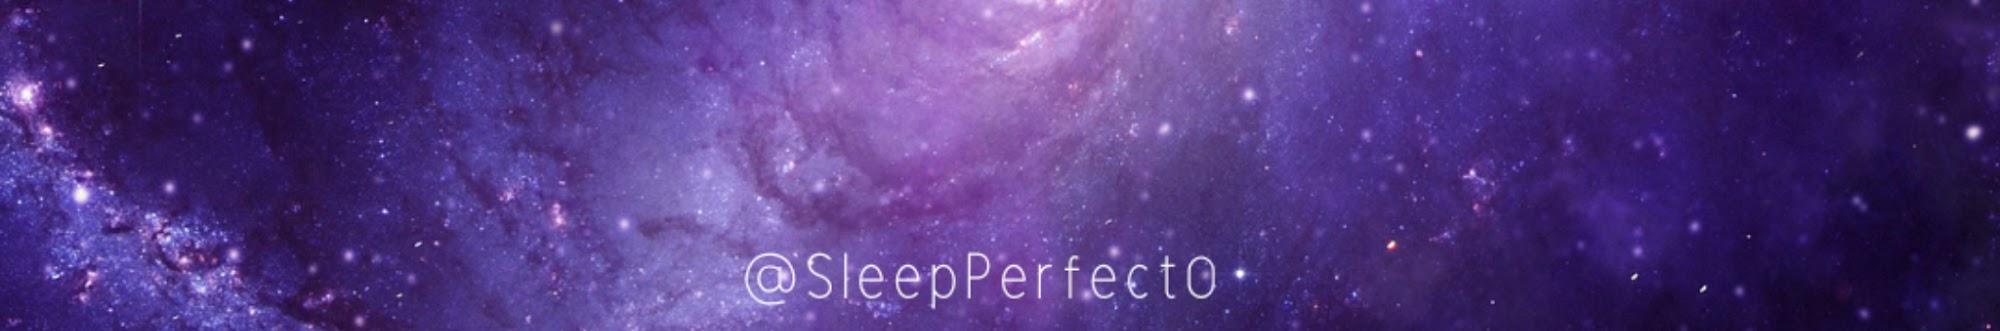 SleepPerfect